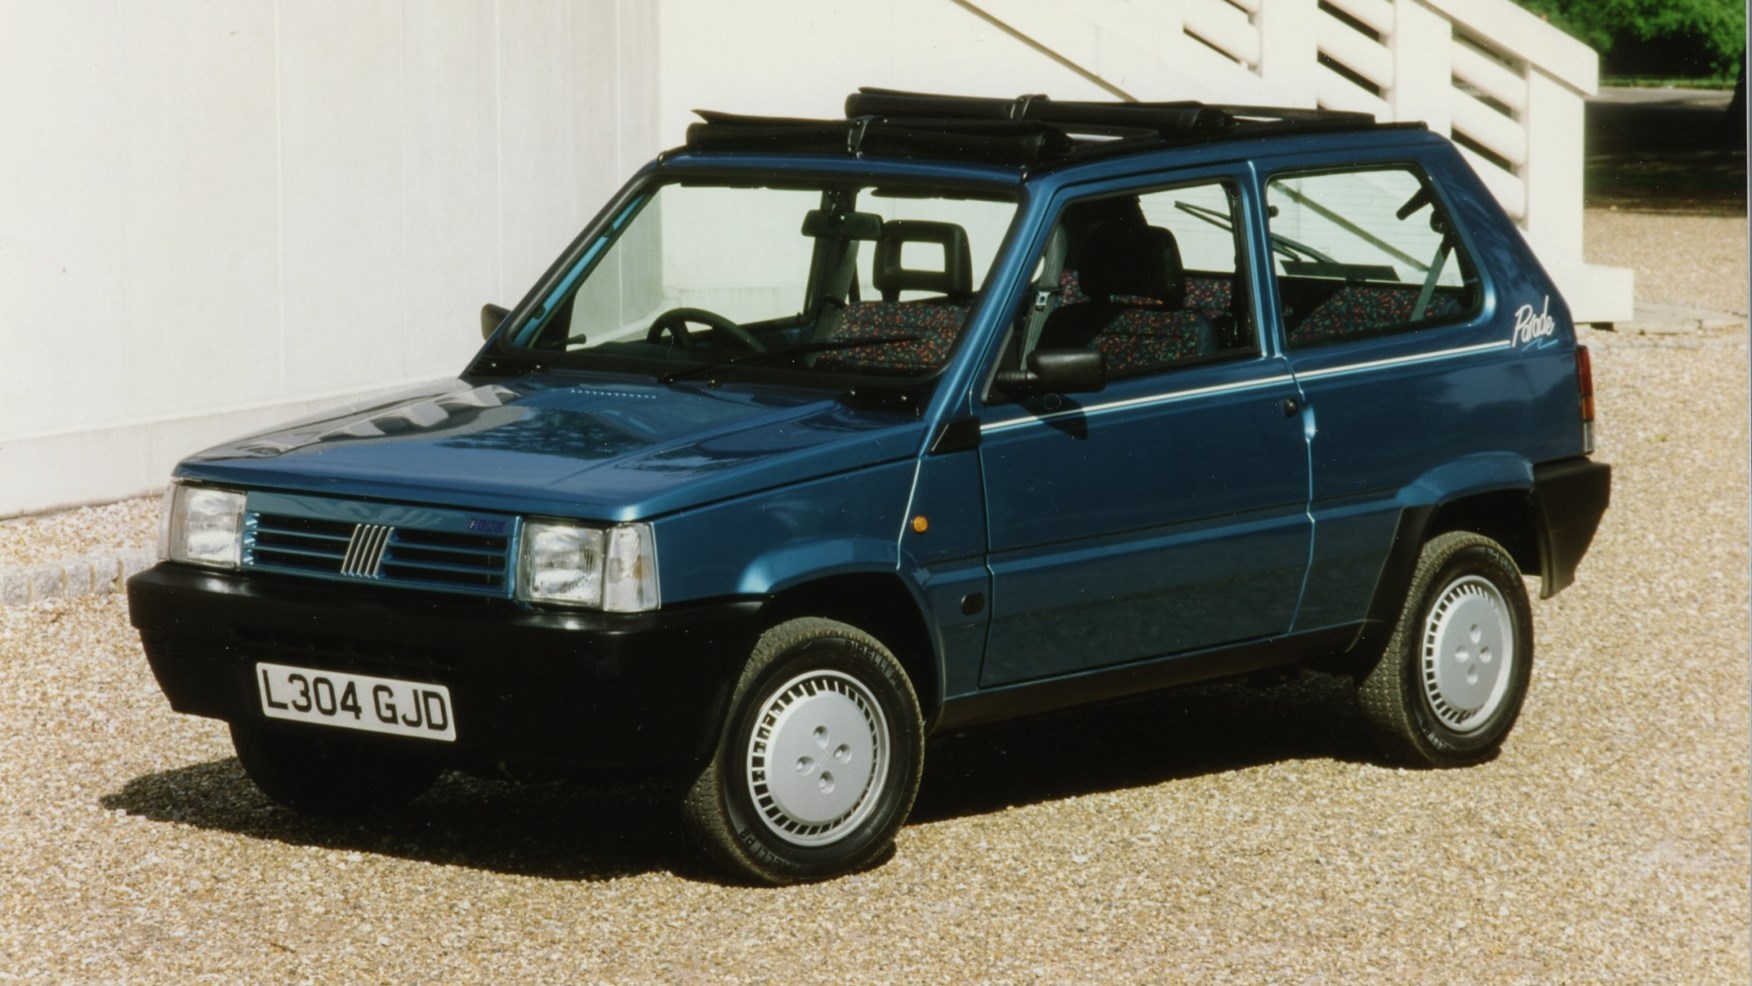 1993 Fiat Panda 4X4 Review - Italy's Favorite Car! 